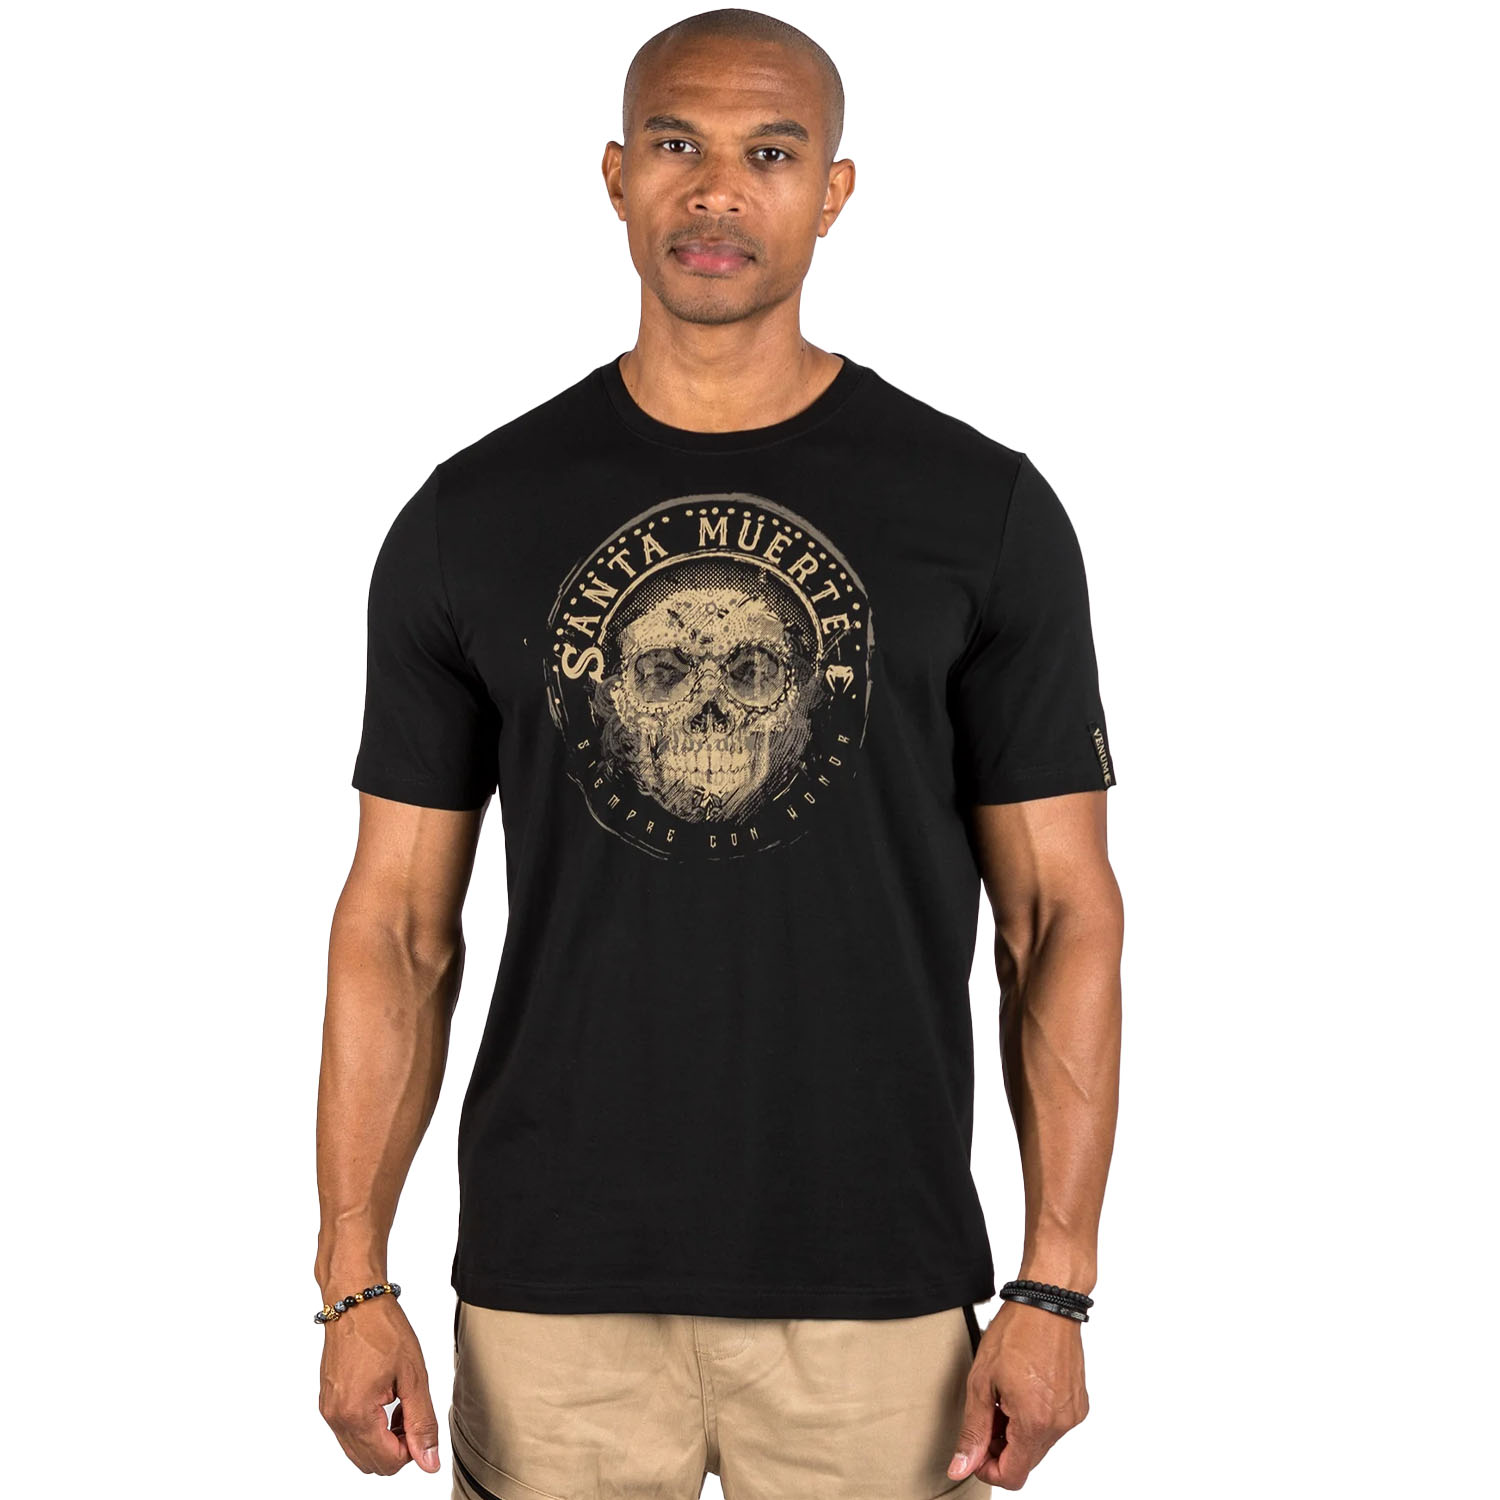 VENUM T-Shirt, Santa Muerte, Dark Side, schwarz-braun